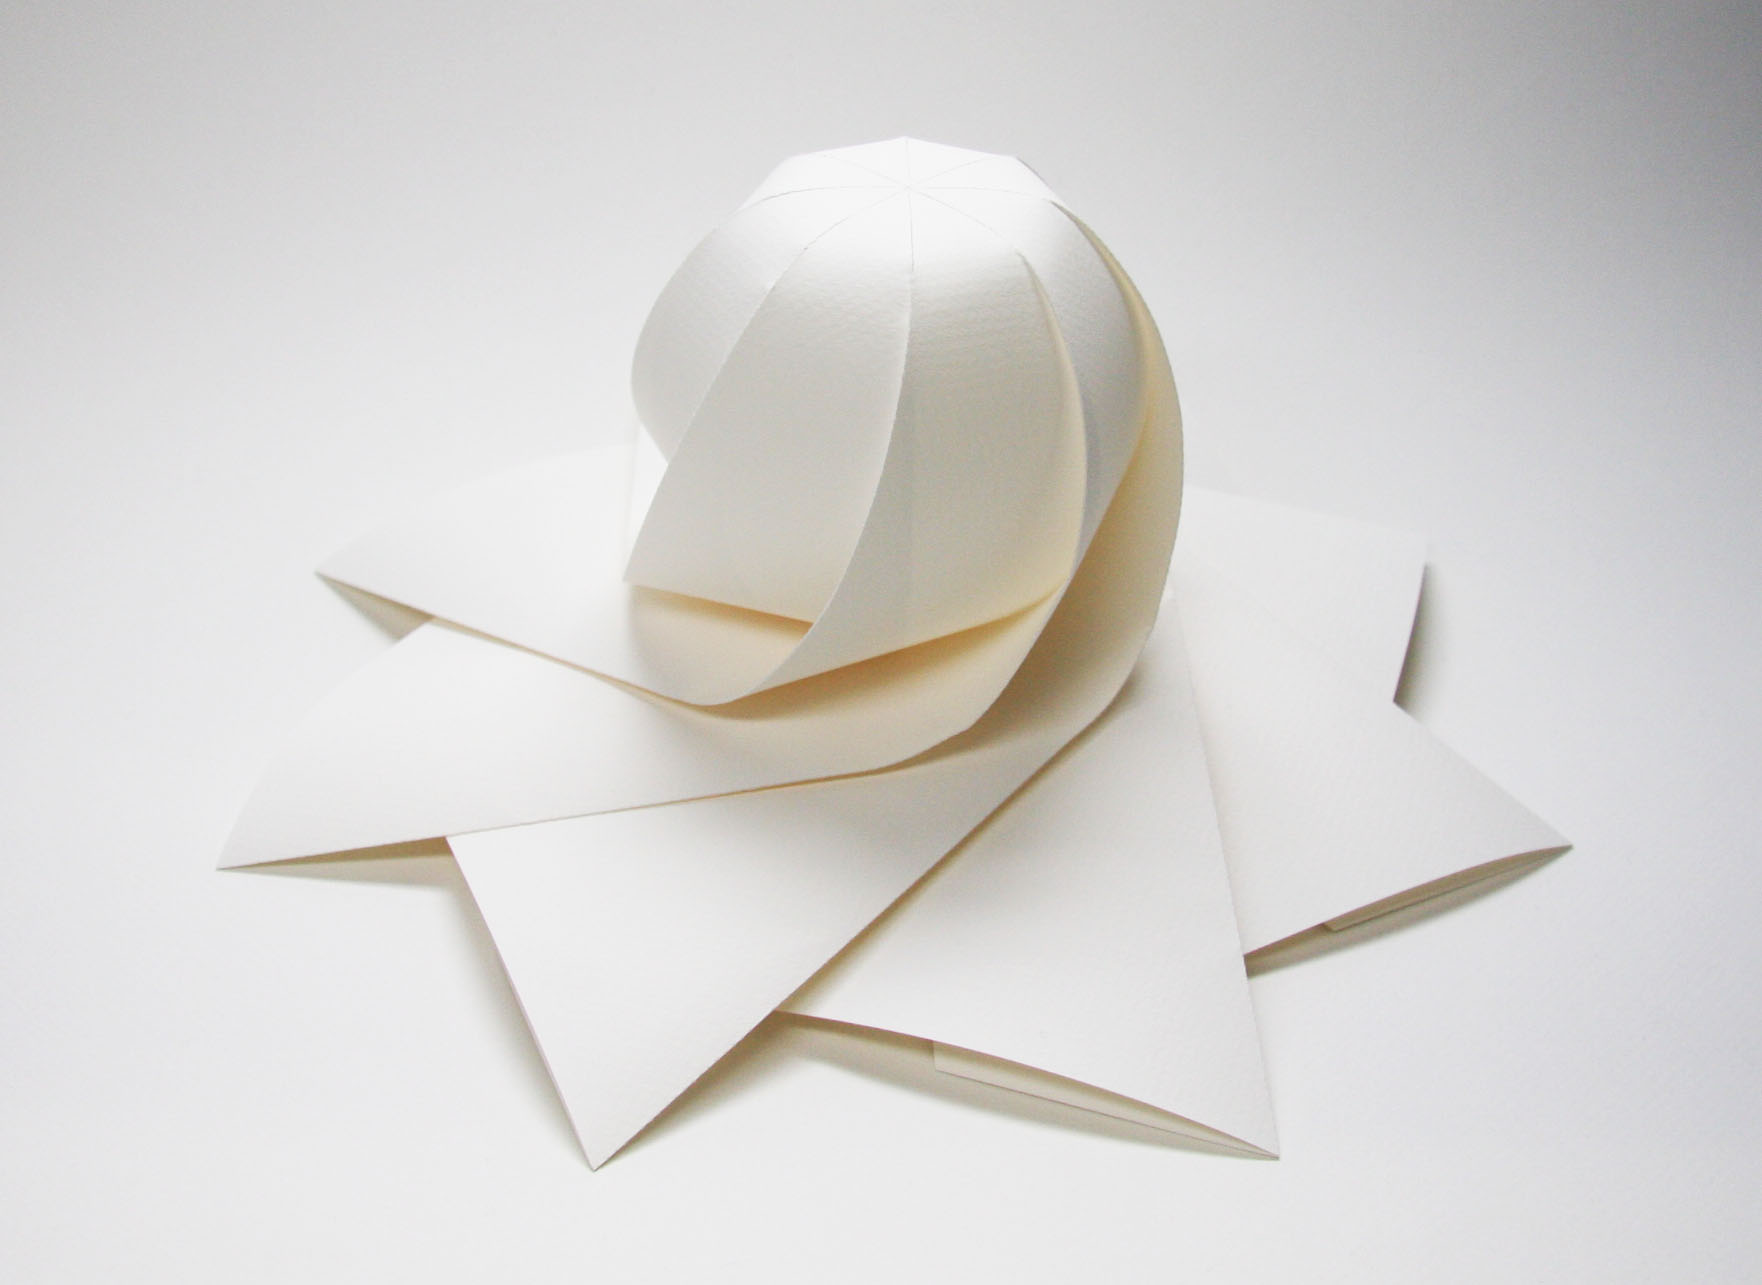 三谷 純 Jun Mitani 立体を紙で包むときに 長方形の紙で側面を覆うのではなくて 正多角形の紙で上から被せるようにして覆うアプローチも考えられます チュッパチャップスの包装紙みたいな感じです そんな発想で こちらの形が作り出されました 1つ